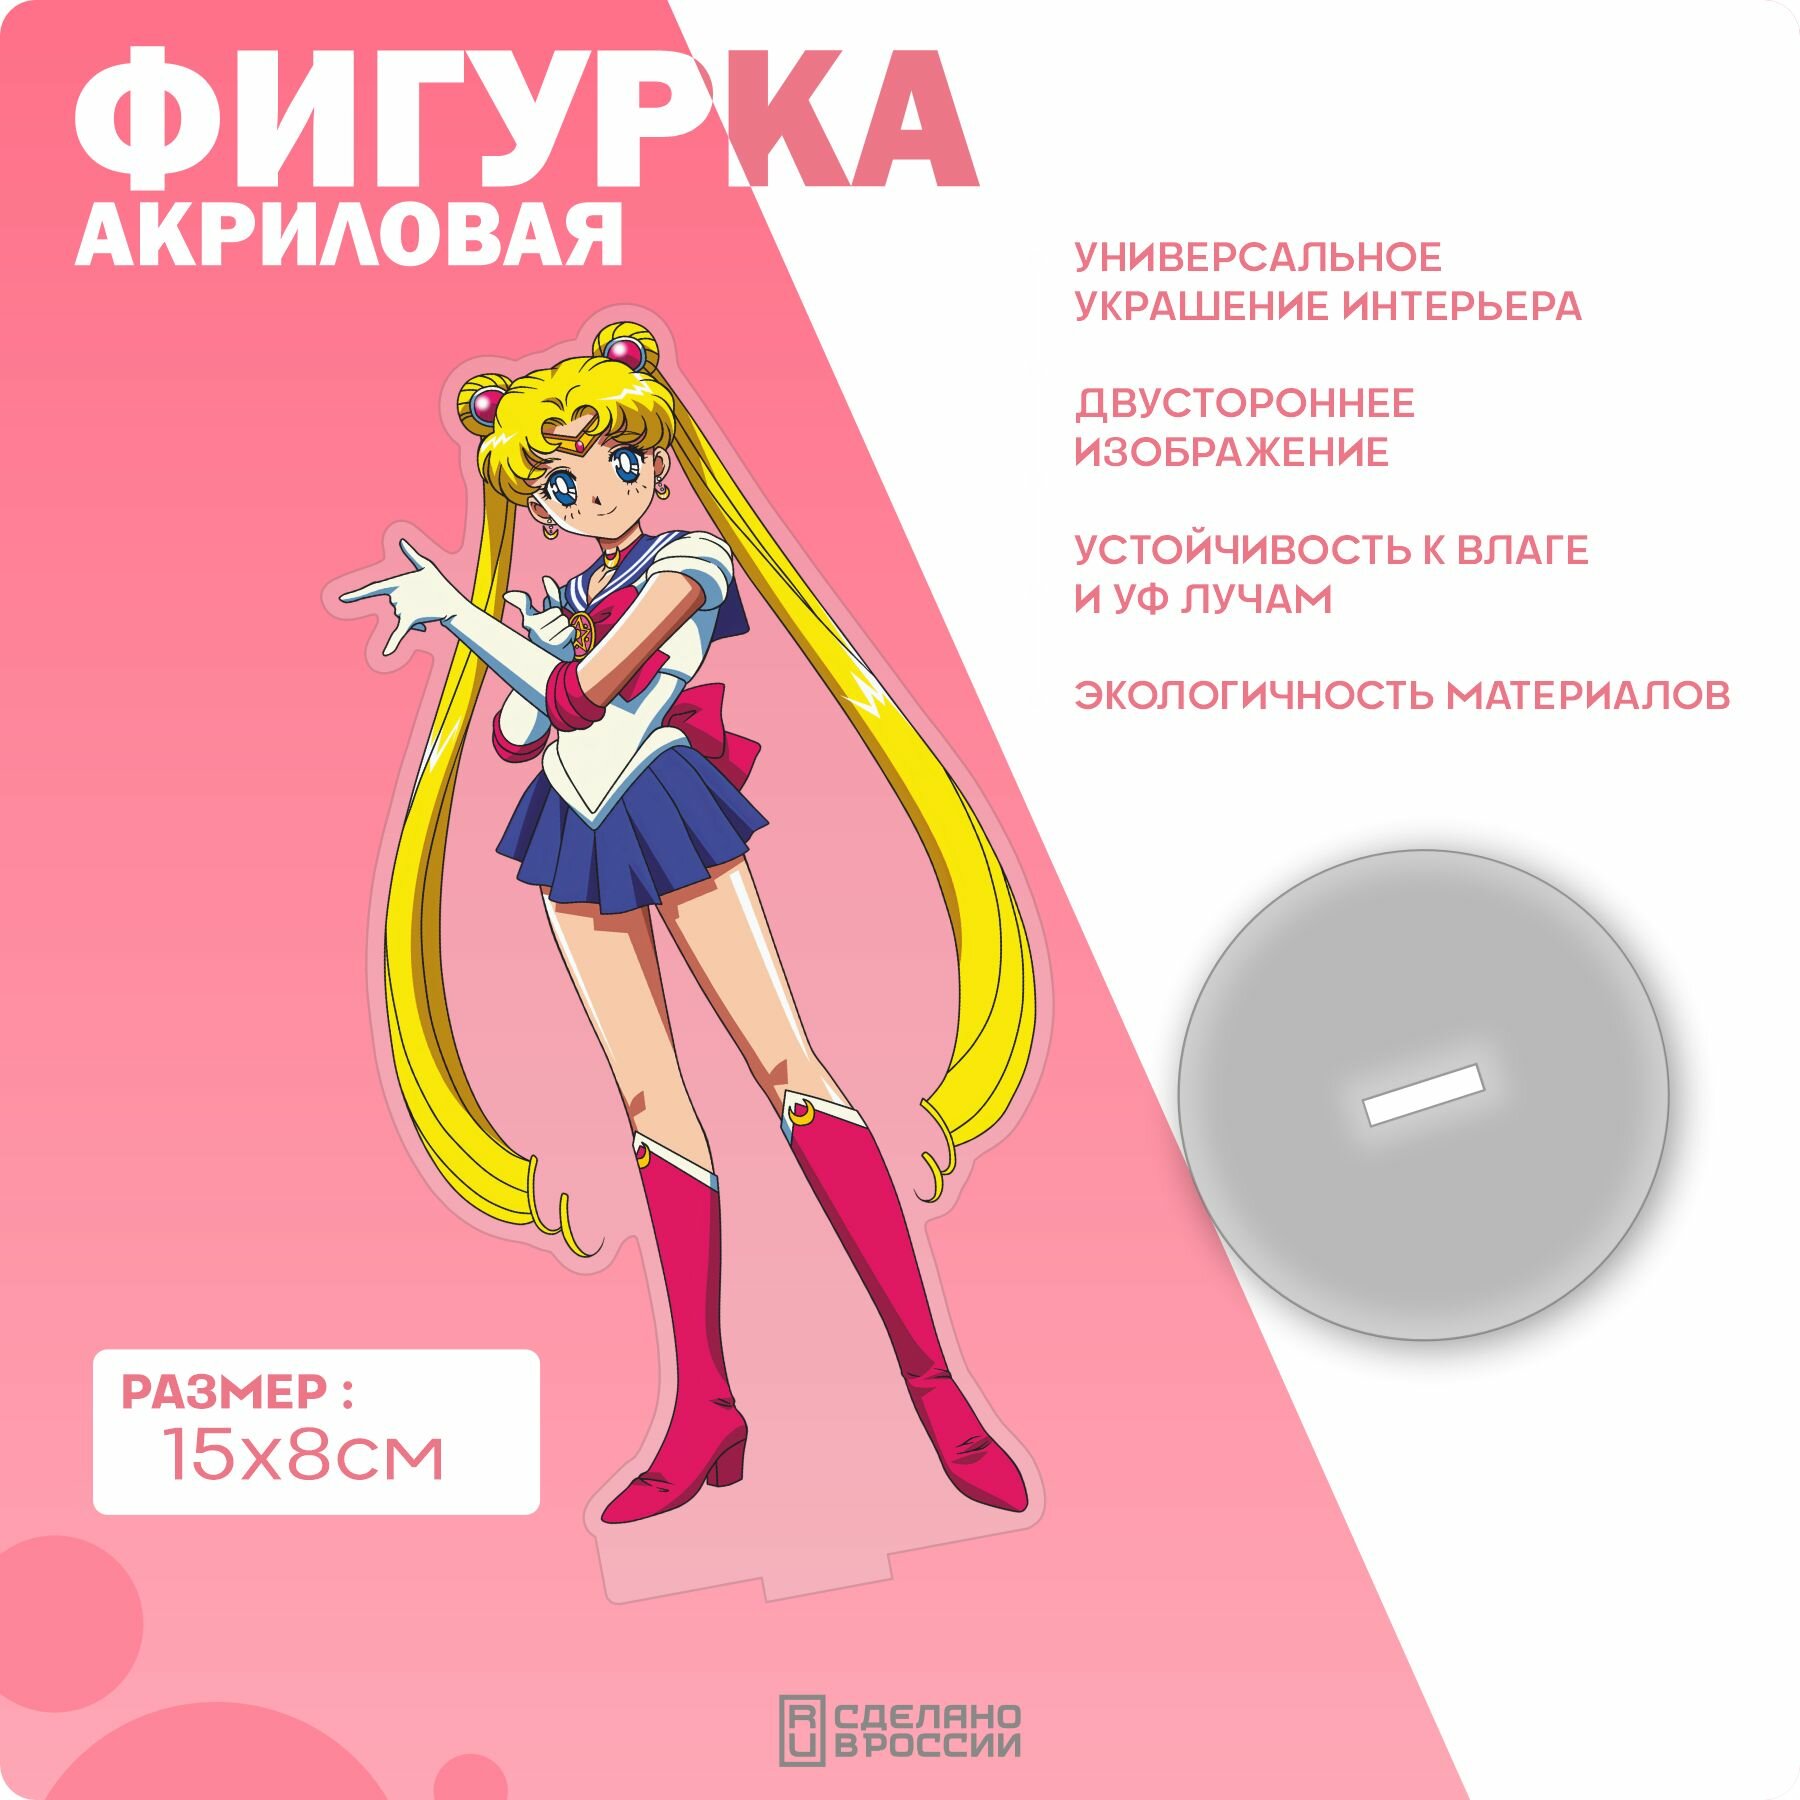 Акриловая фигурка Сейлор Мун Sailor Moon